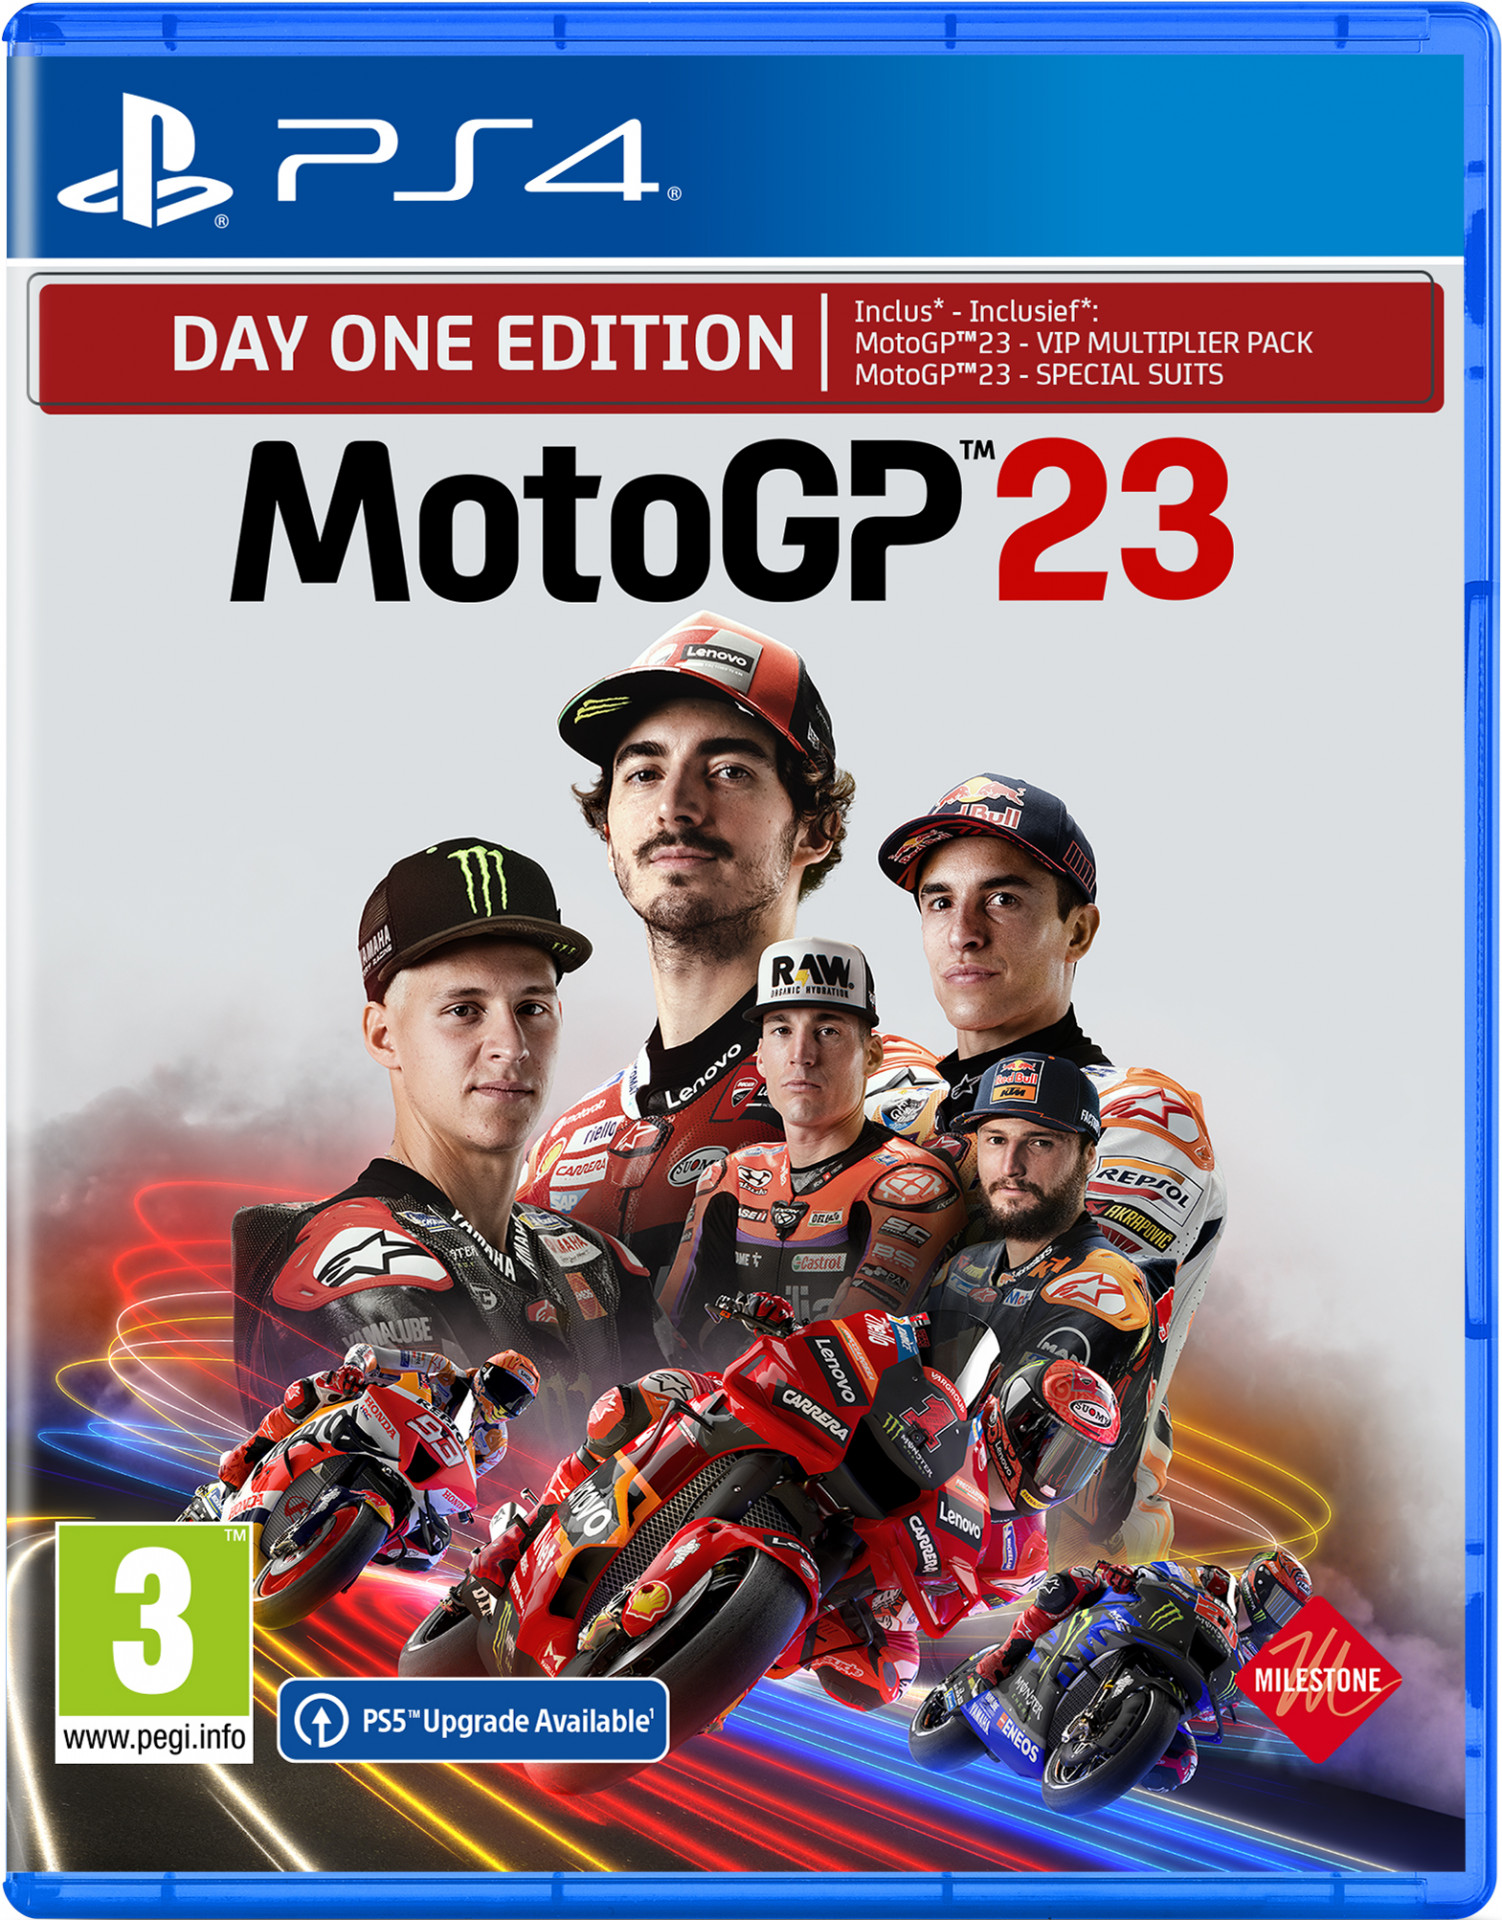 MotoGP 23 (PS4), Milestone